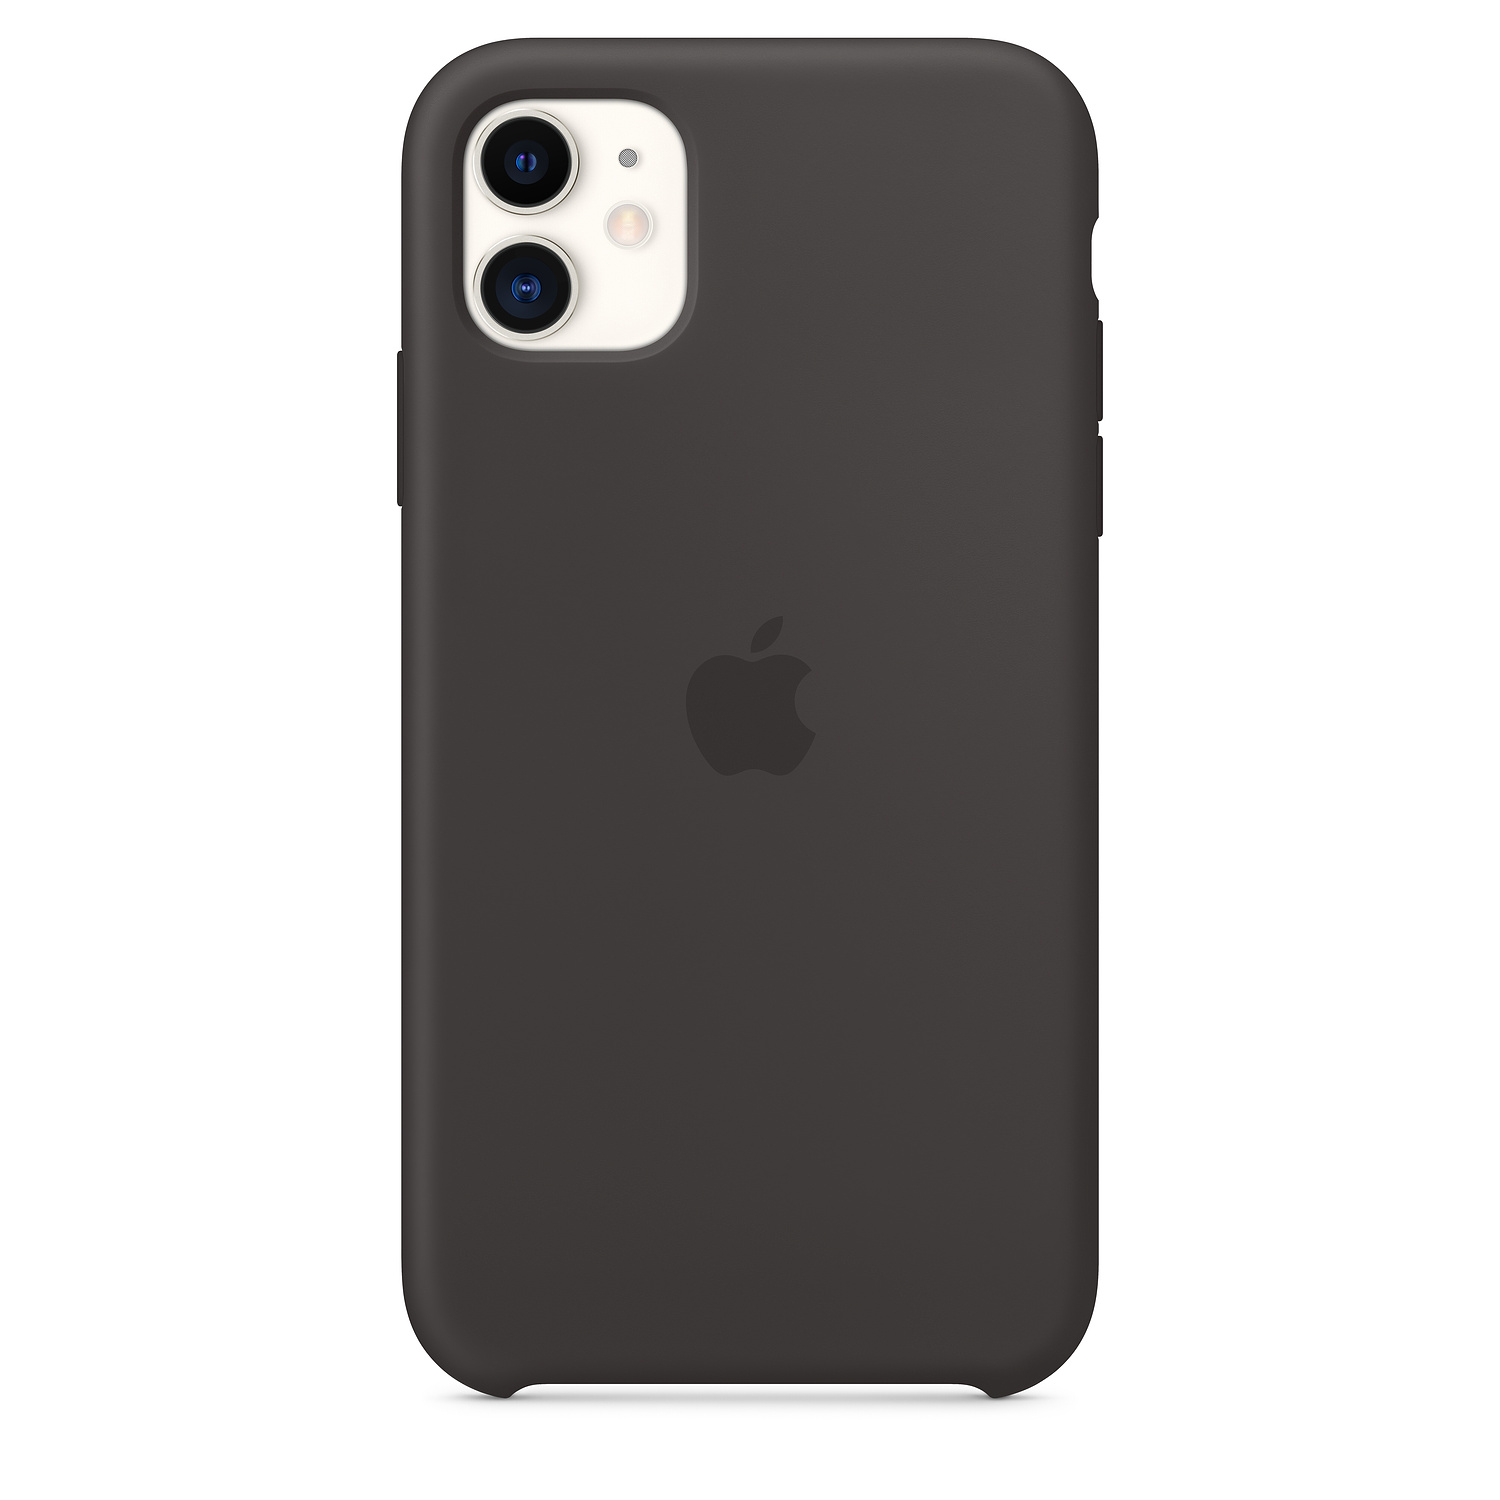 Apple MWVU2ZM/A - Cover - Apple - iPhone 11 - 15,5 cm (6.1 Zoll) - Schwarz